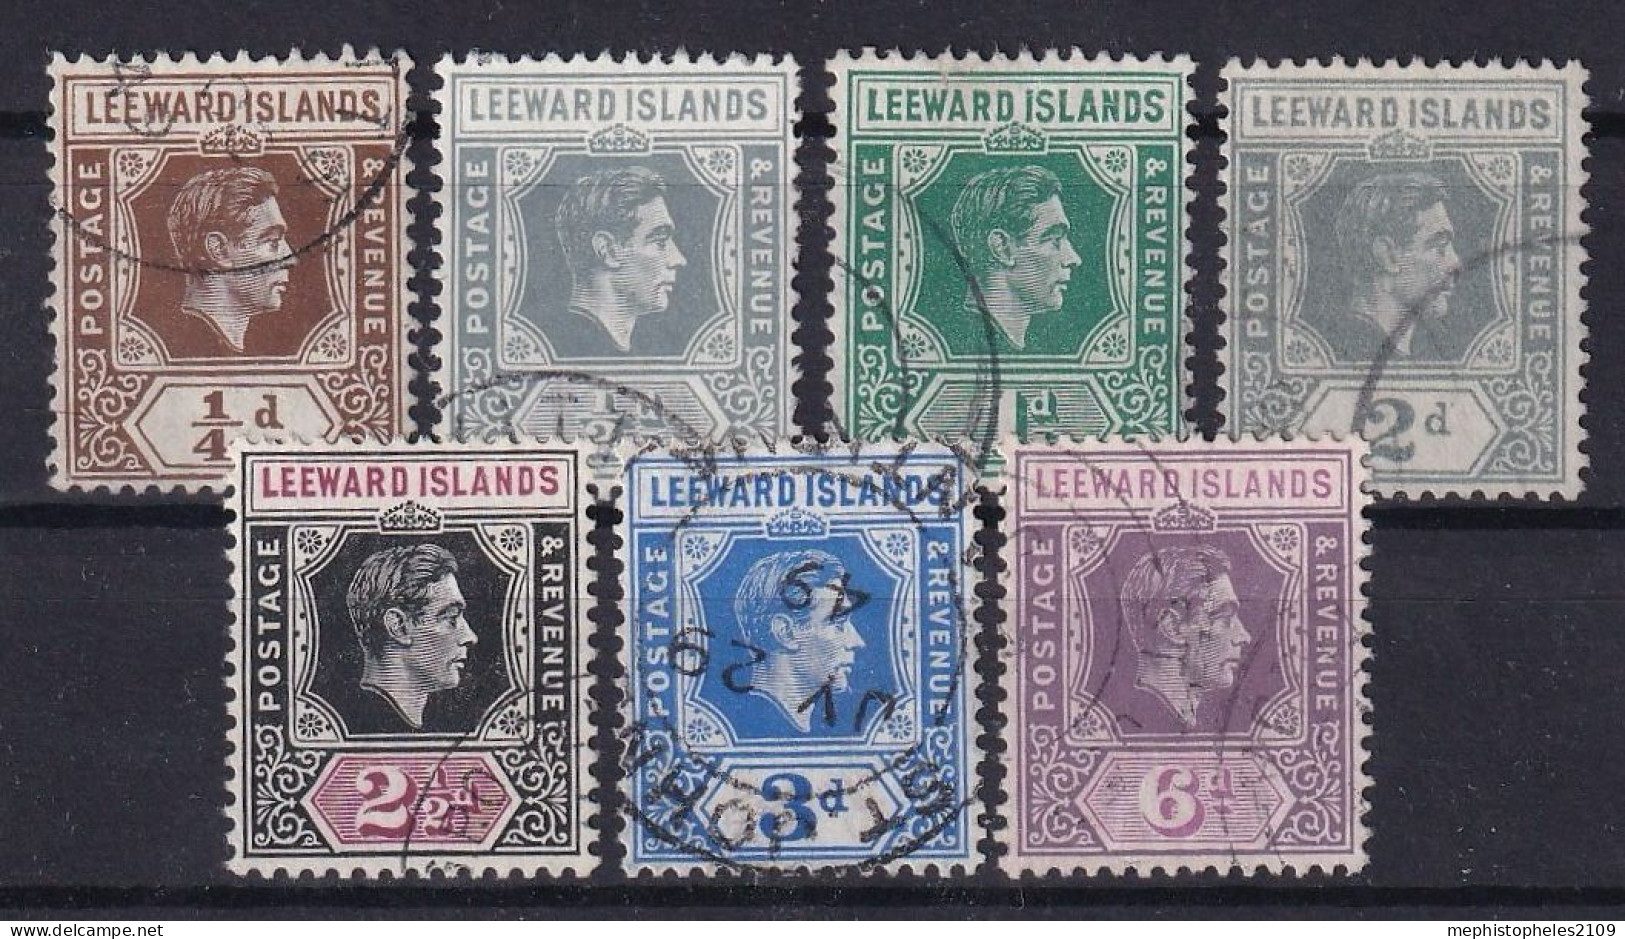 LEEWARD ISLANDS 1938 - Canceled - Sc# 103, 104, 107-110, 121 - Leeward  Islands